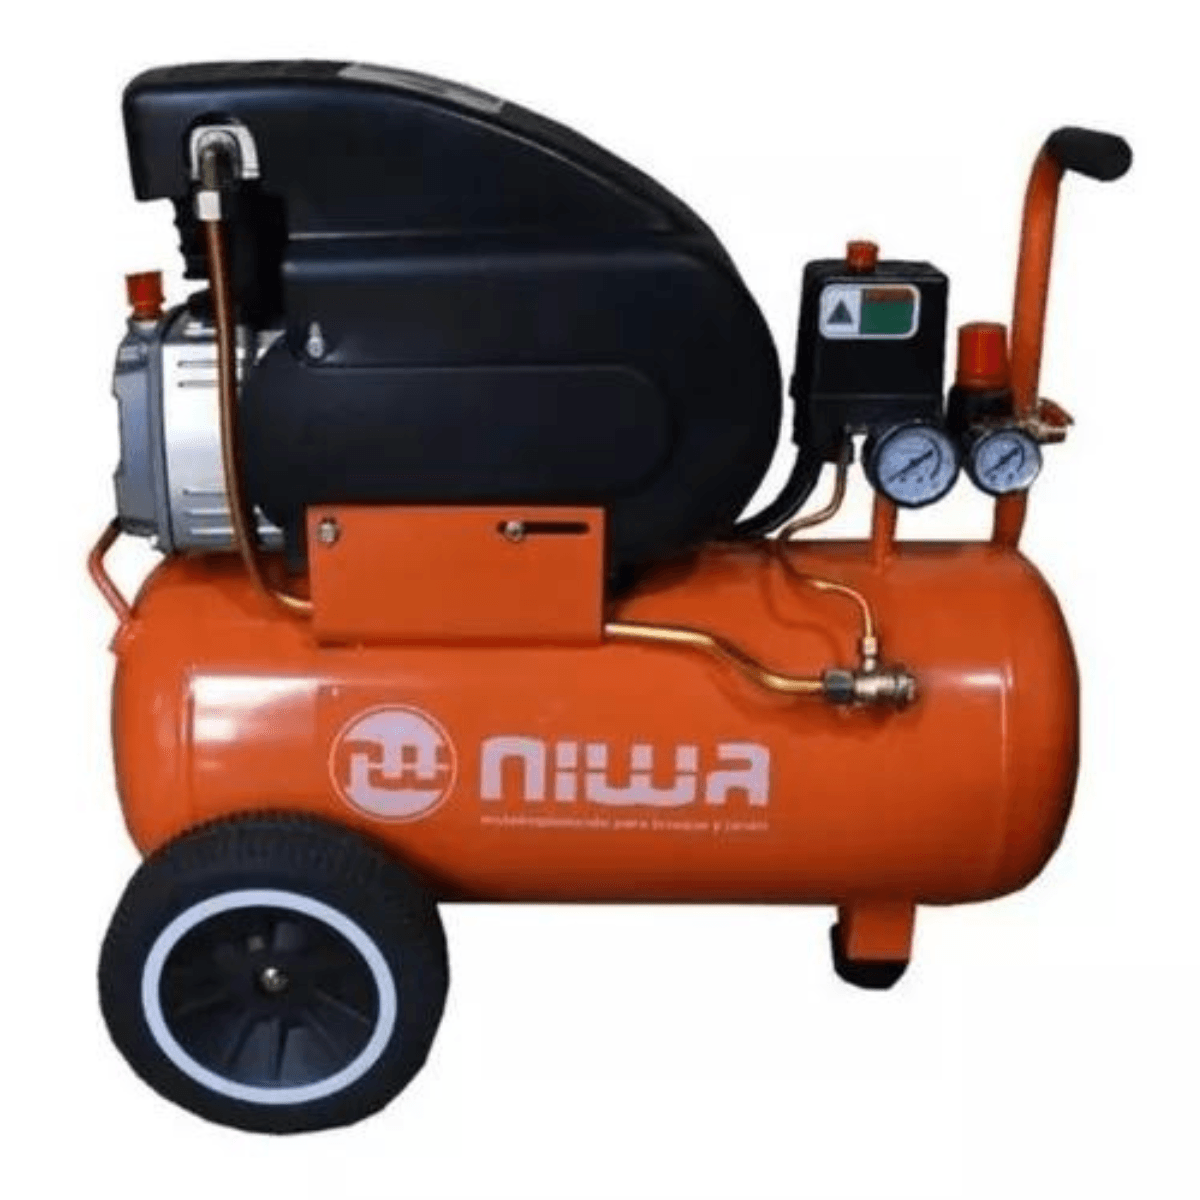 Compresor de aire eléctrico portátil Niwa ANW-2.5/50 monofásico